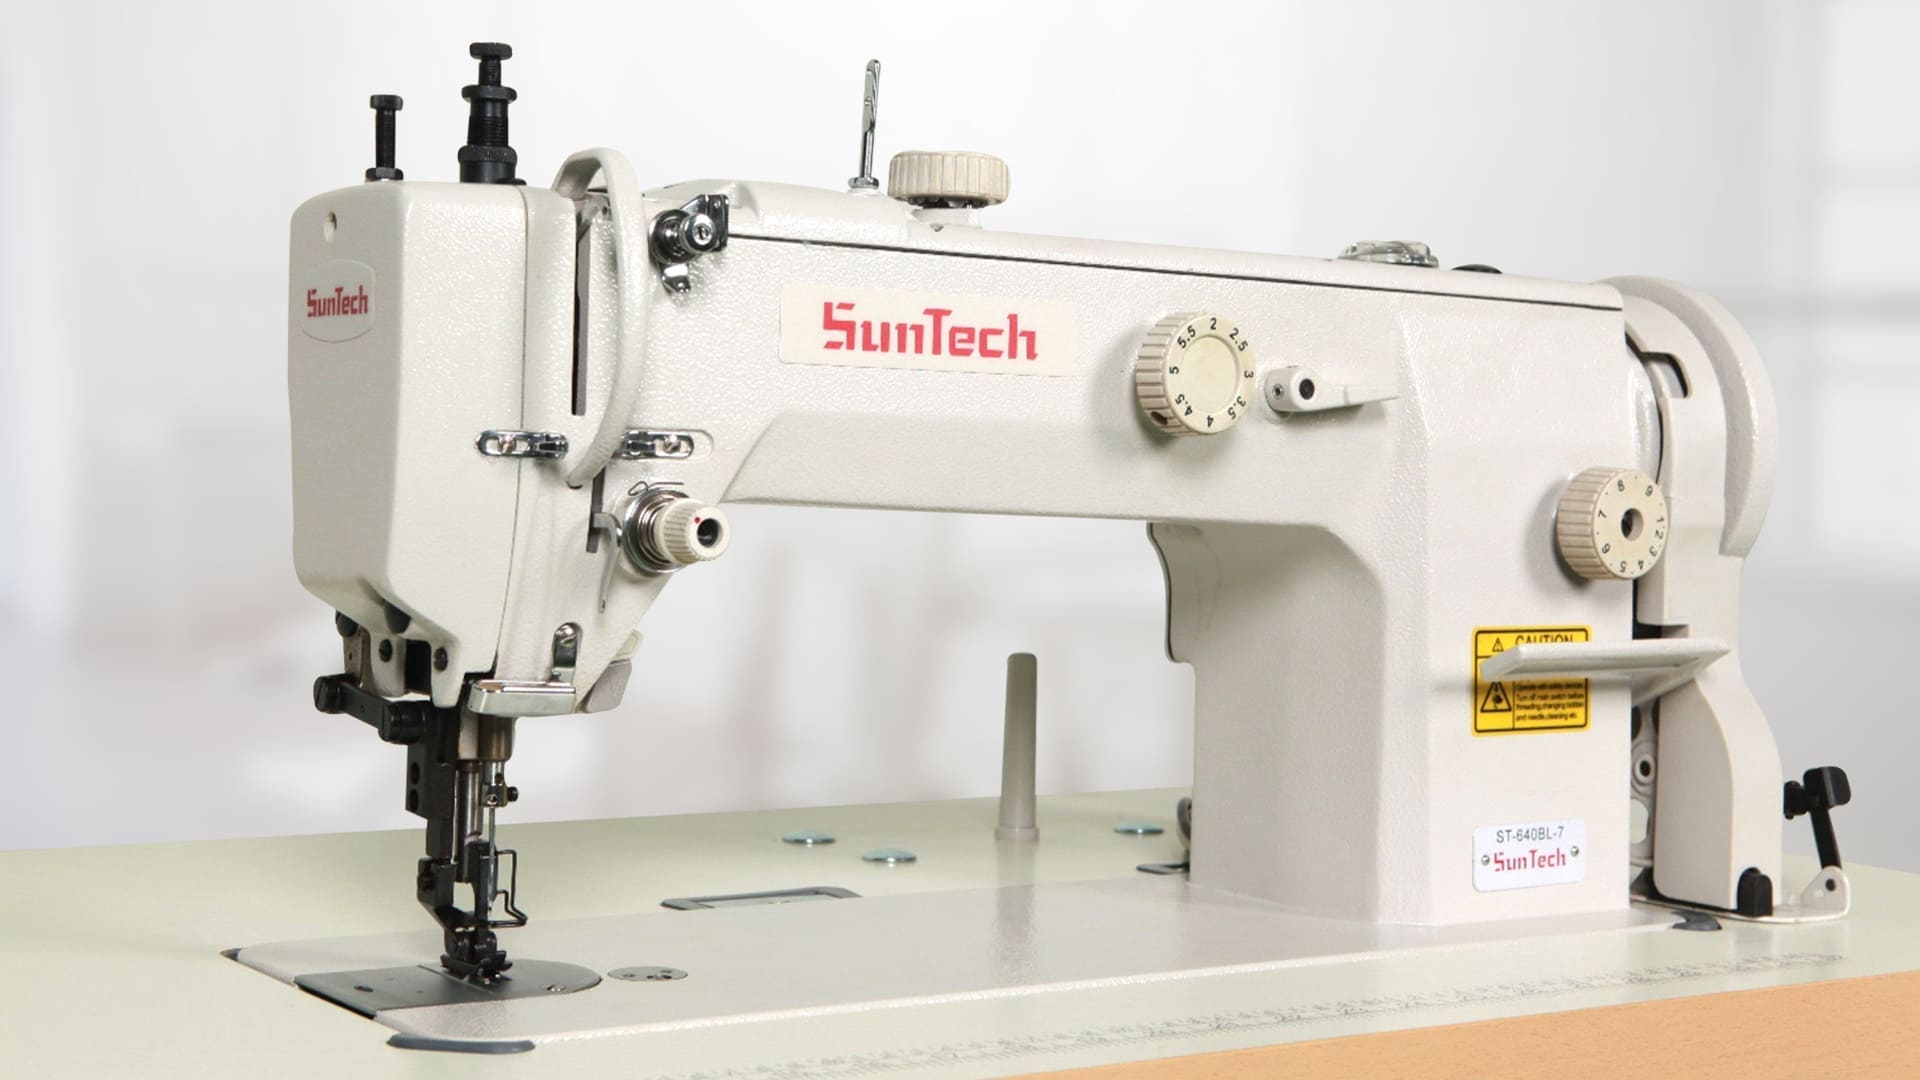 Global sewing machine